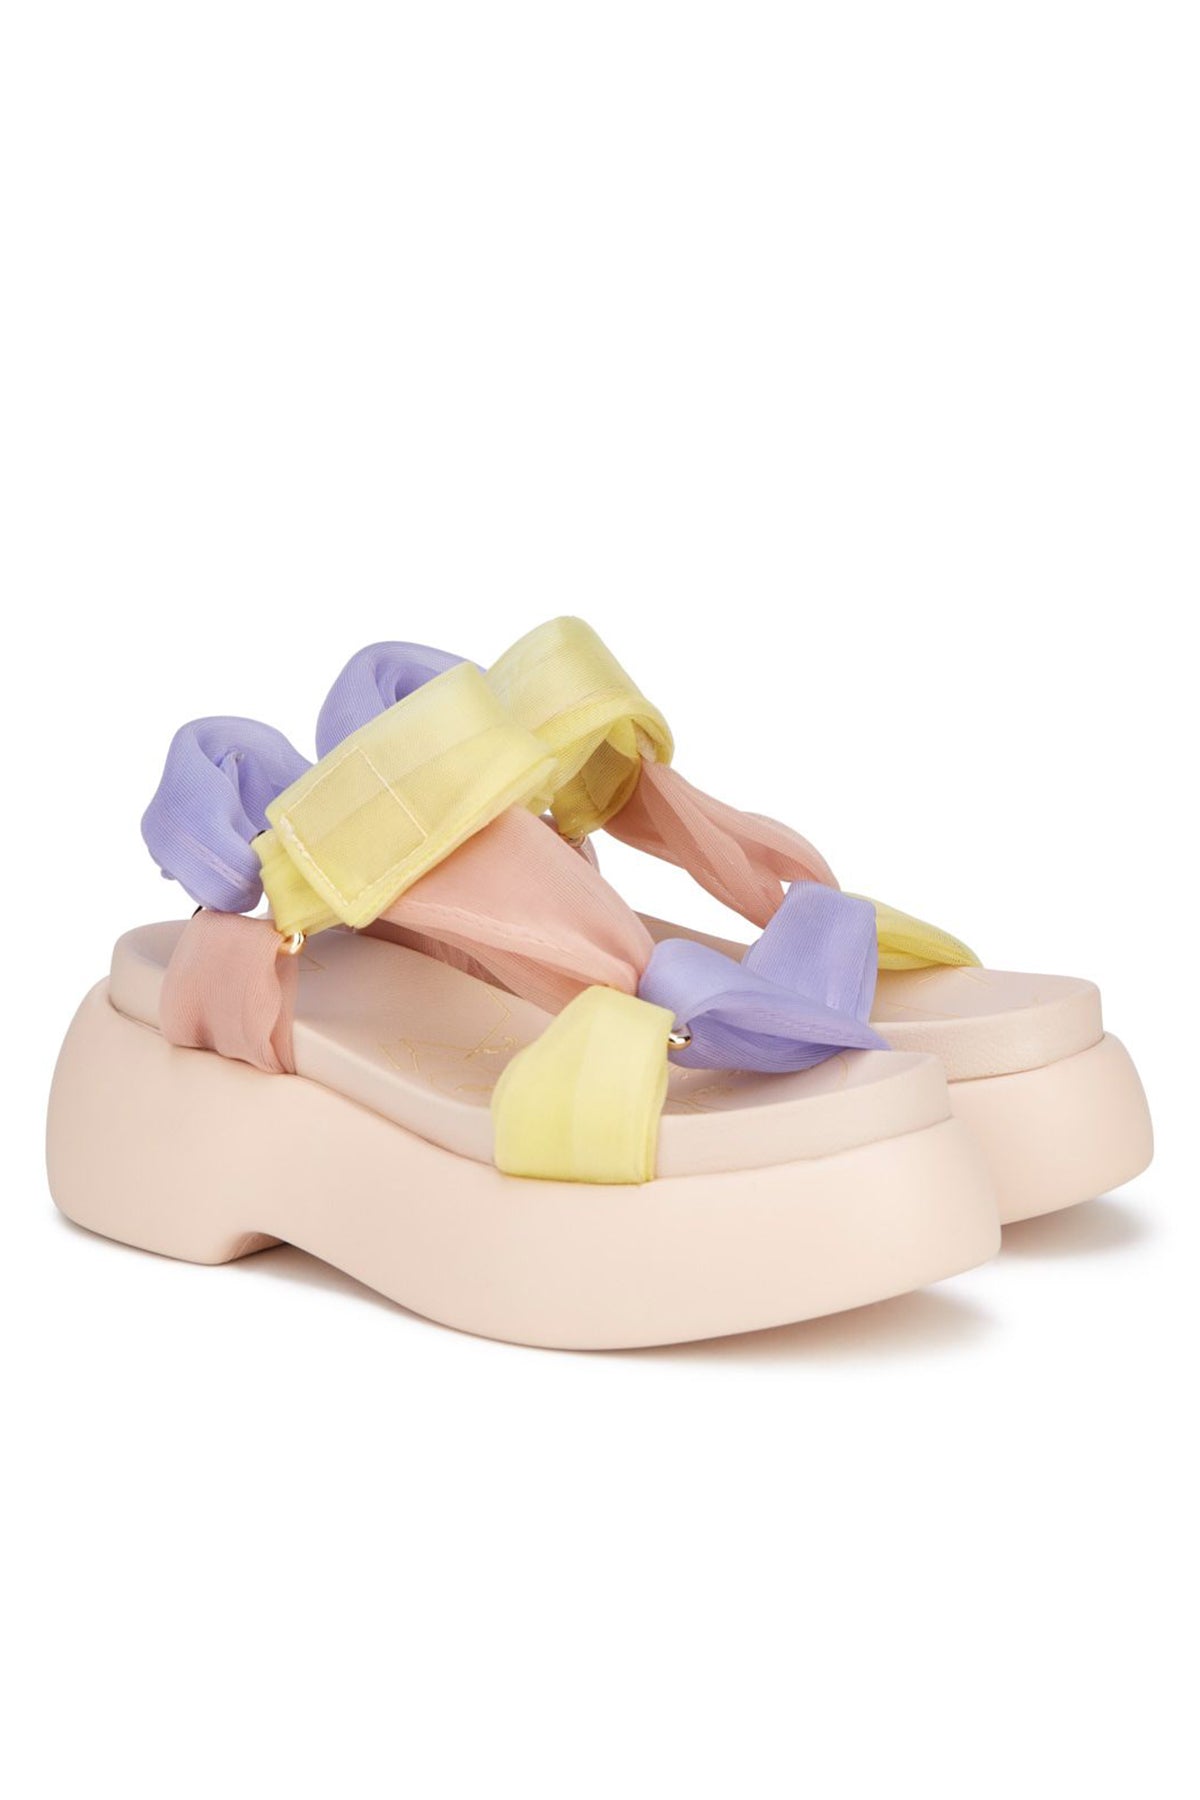 Agl Emma Tül Bantlı Sandalet-Libas Trendy Fashion Store